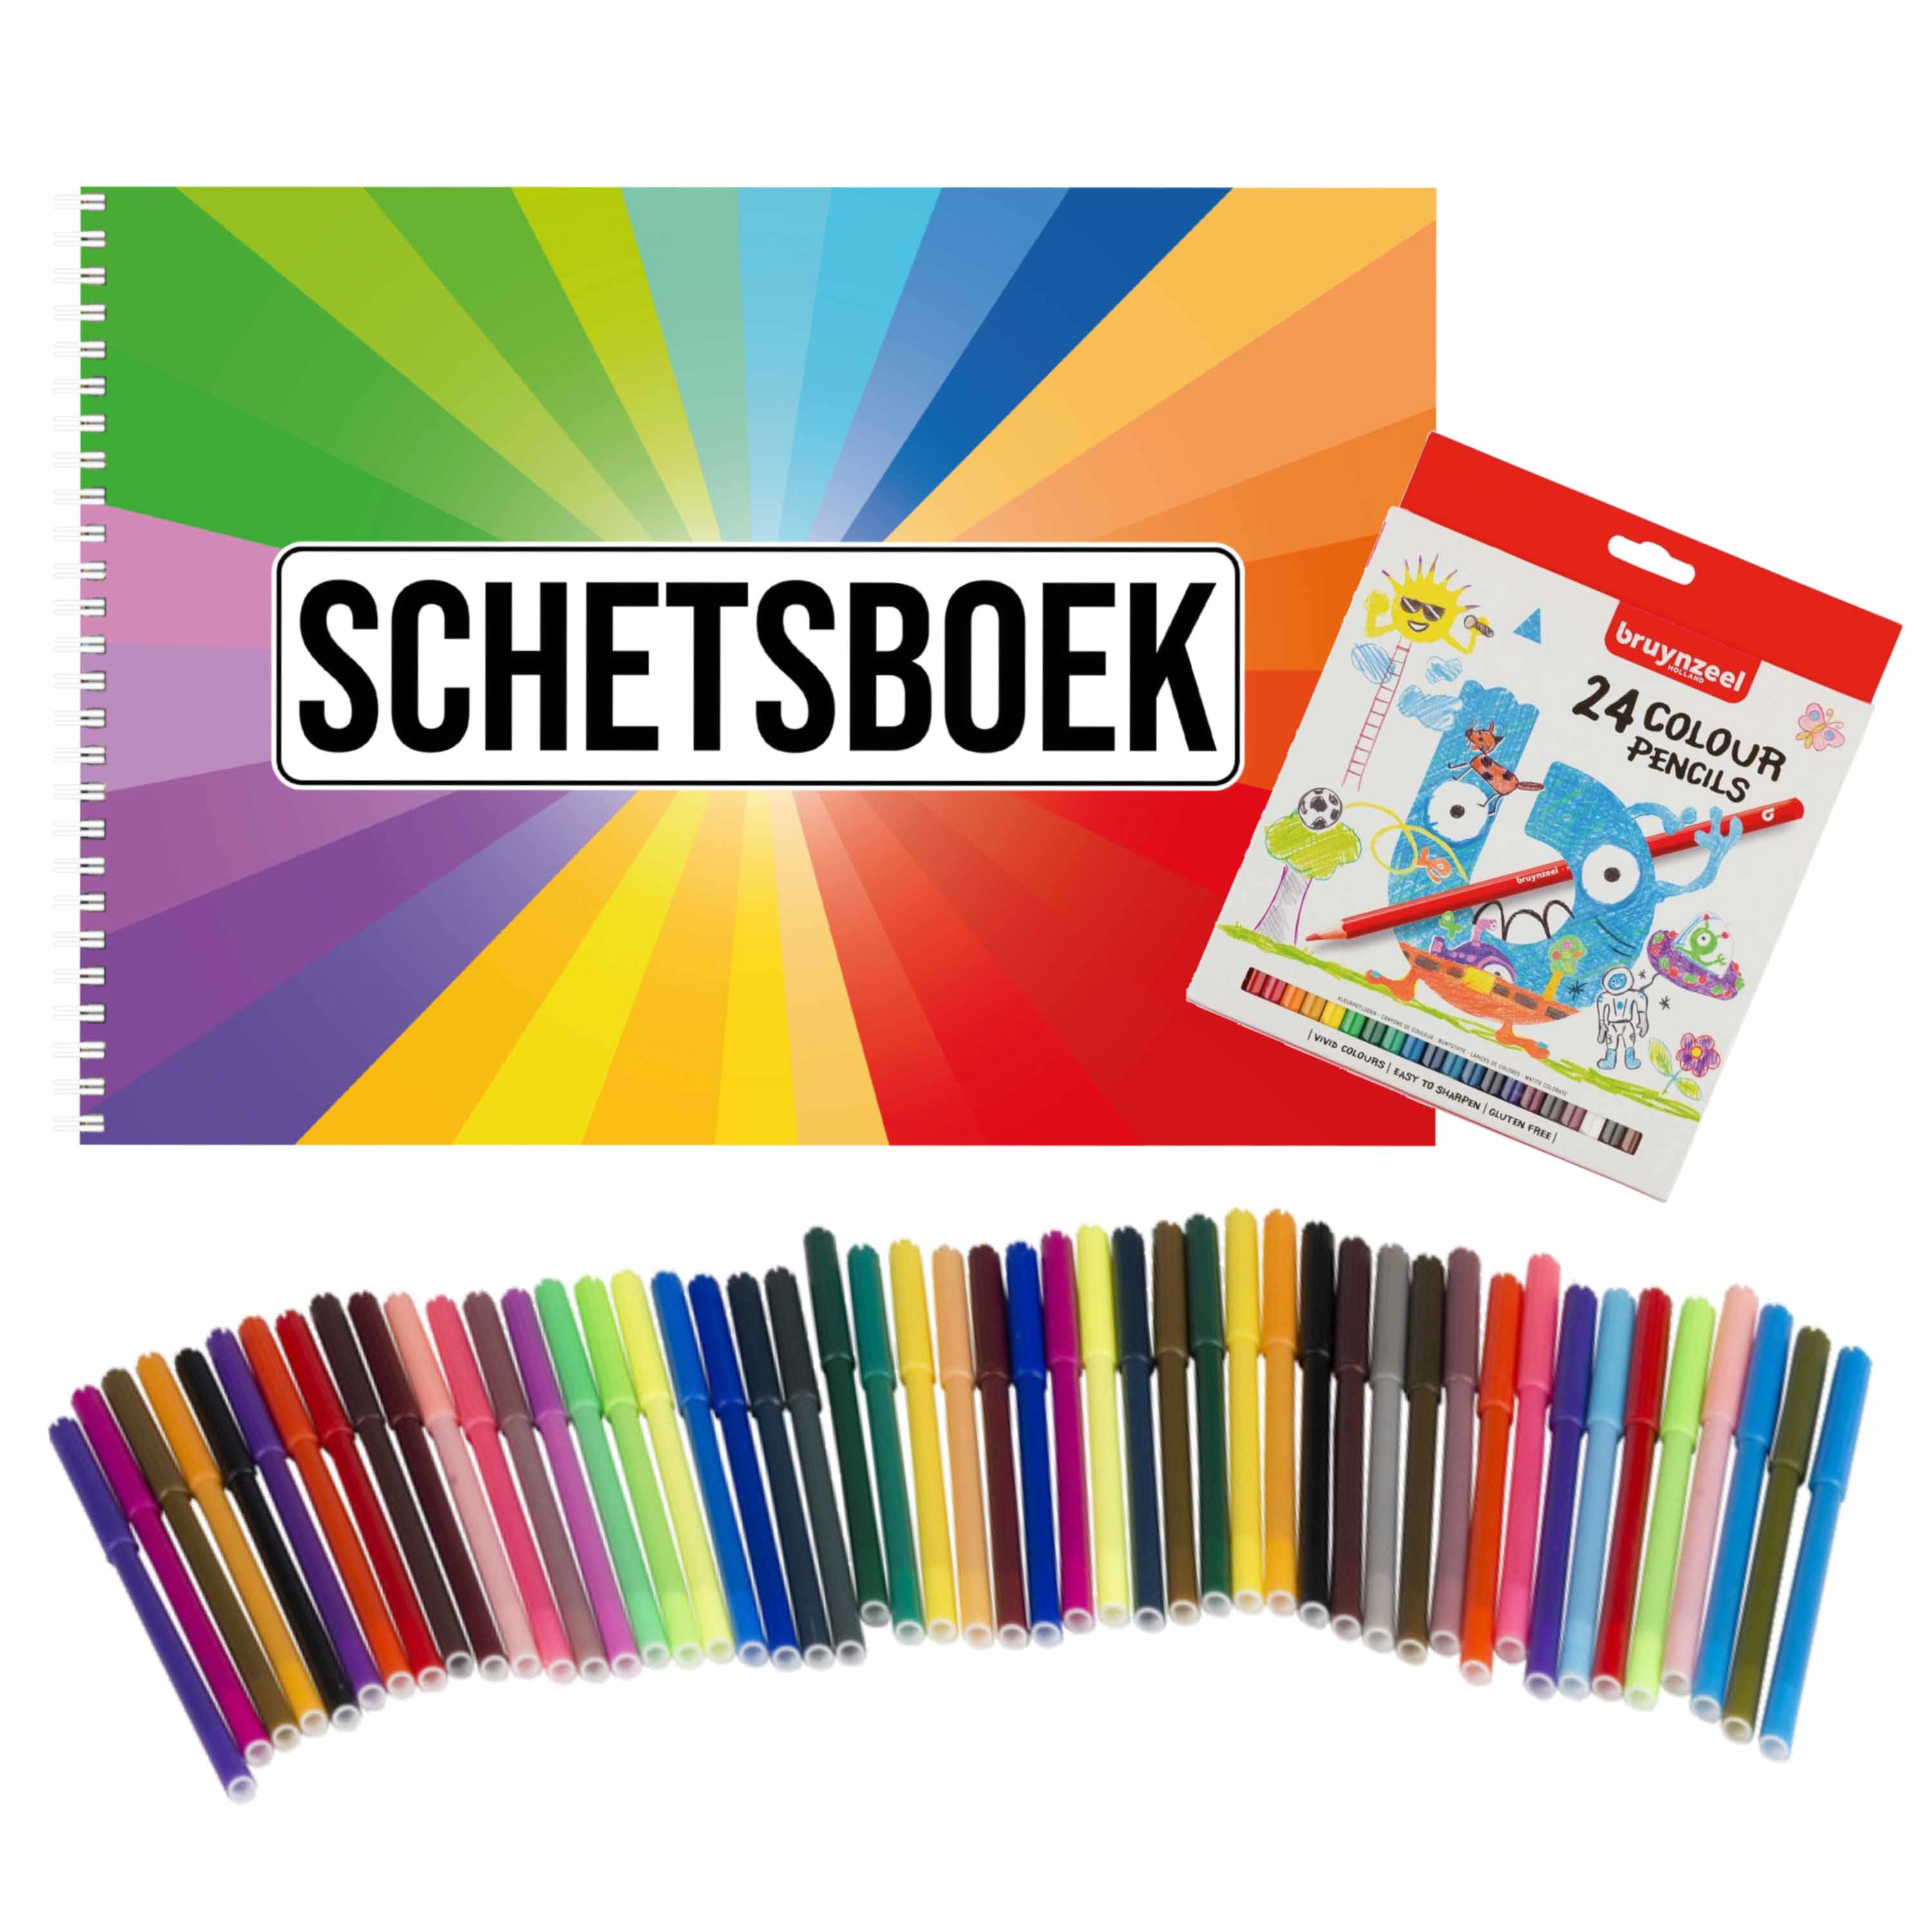 Schetsboek Kleurenwaaier thema A4 50 paginas met 50 viltstiften en 24 potloden